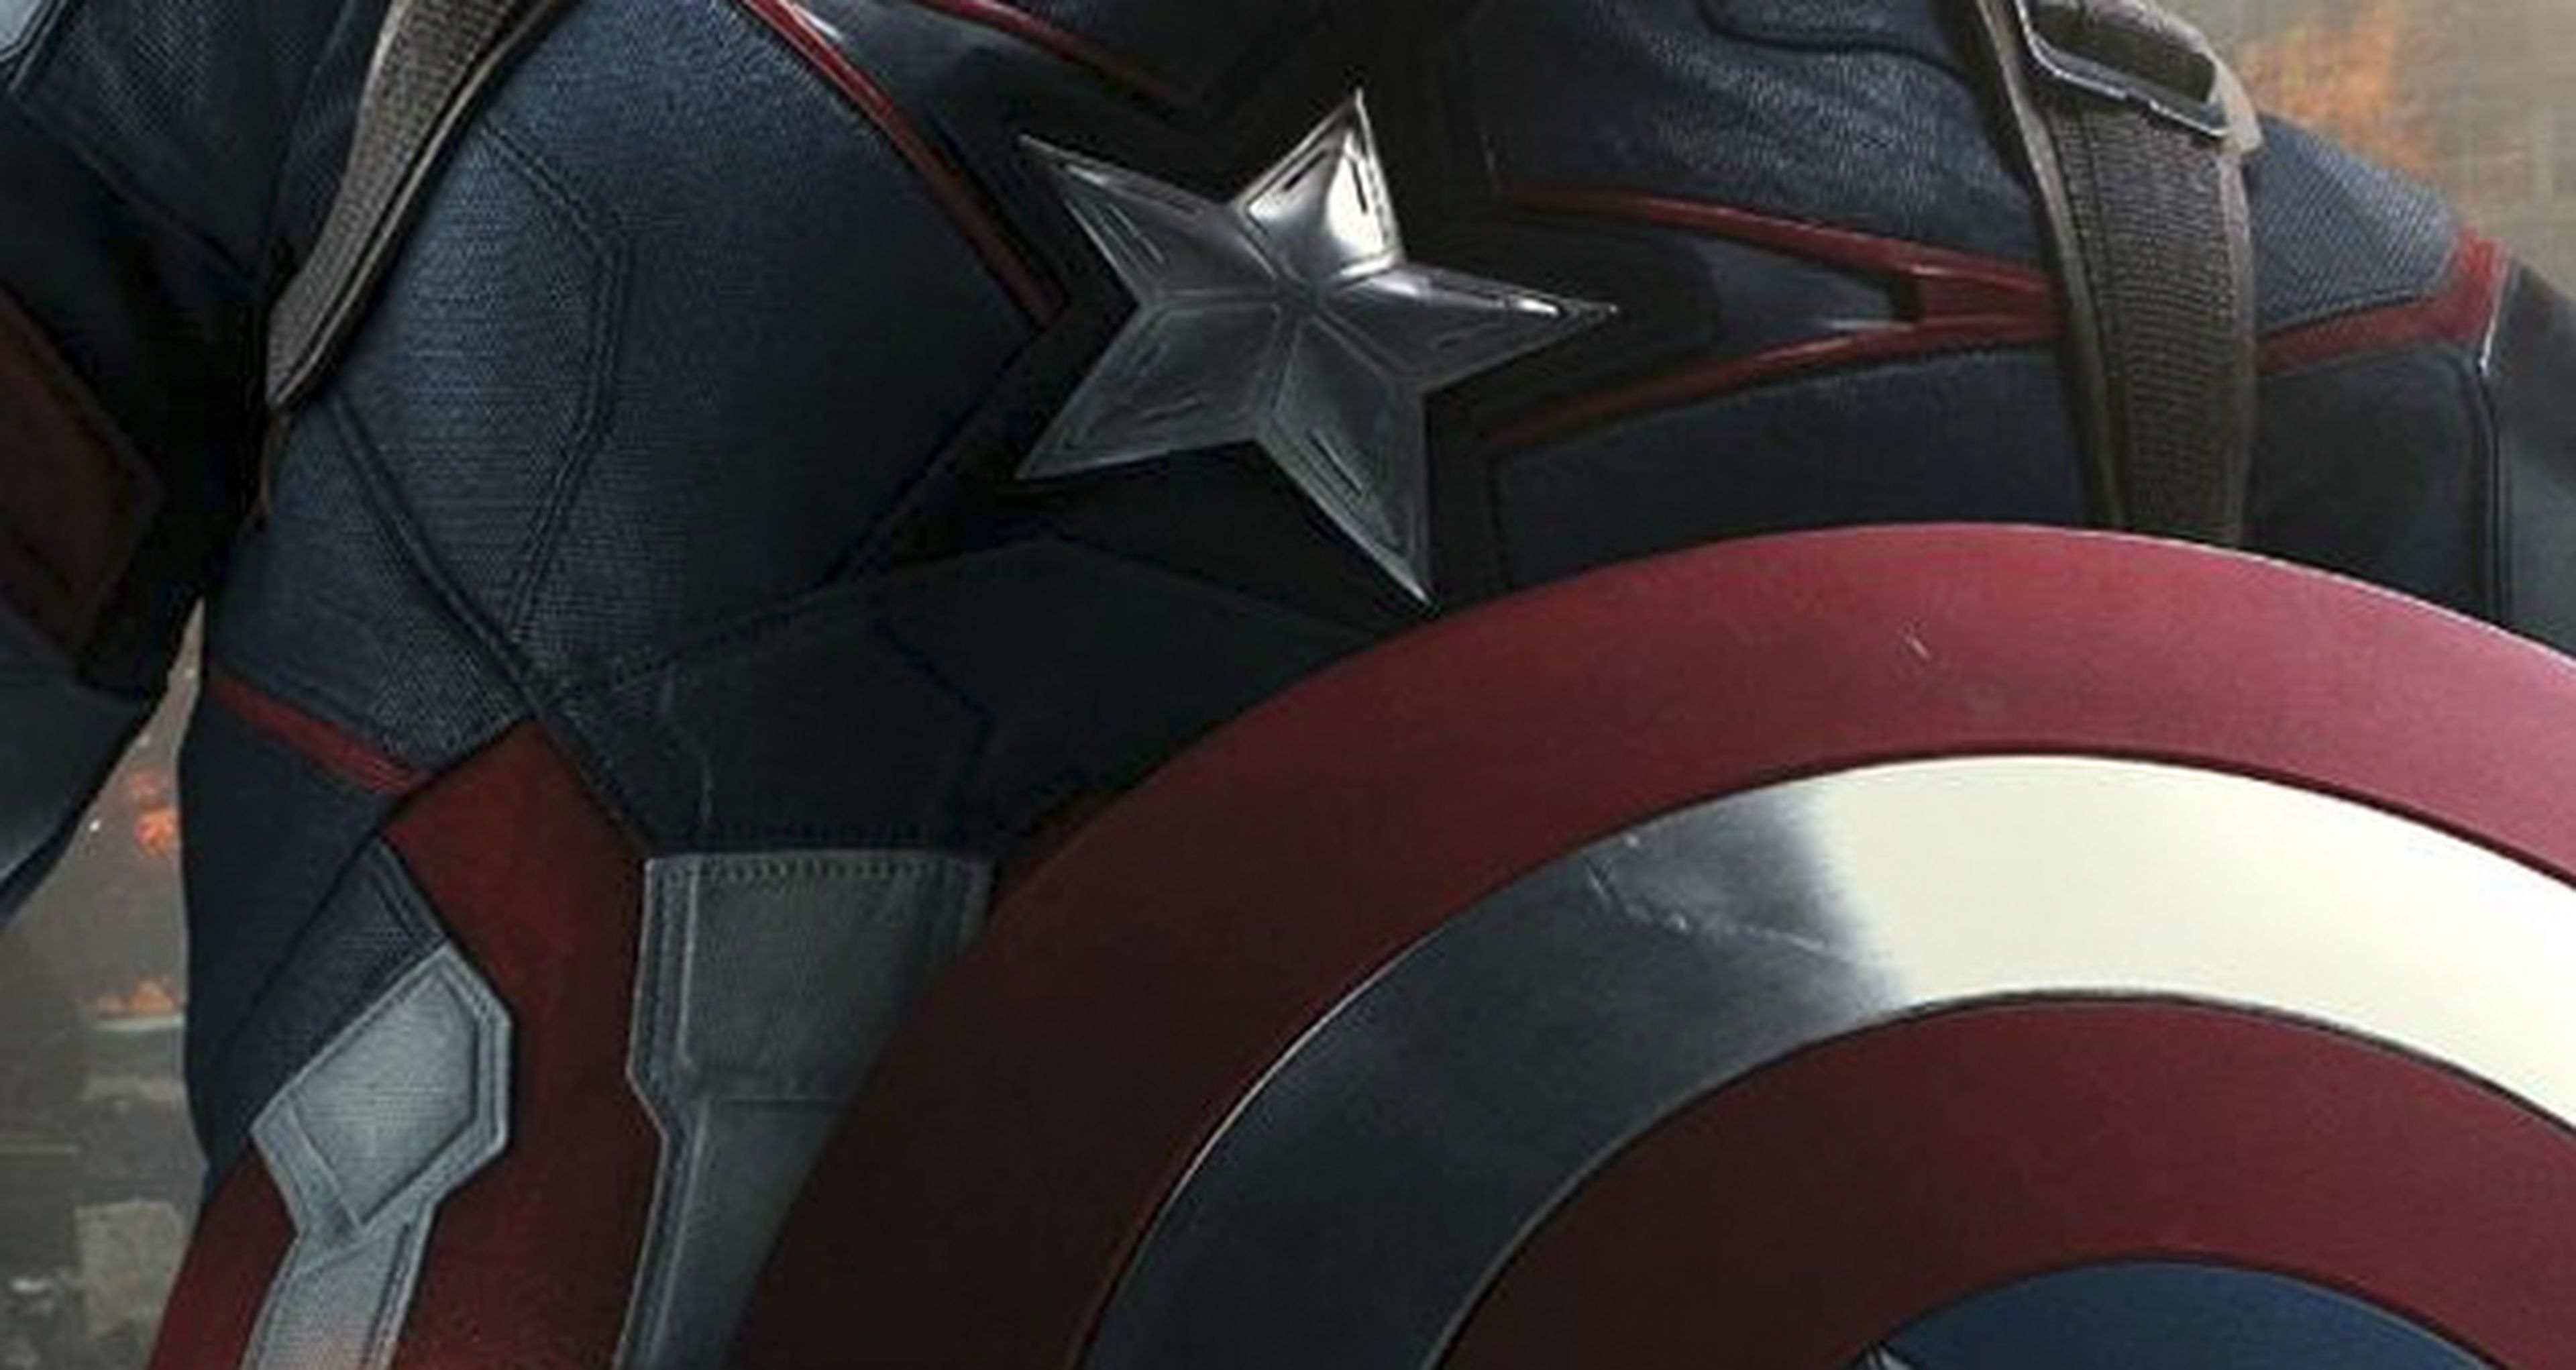 Los Vengadores: la era de Ultrón: cartel de Capitán América y teaser del nuevo tráiler